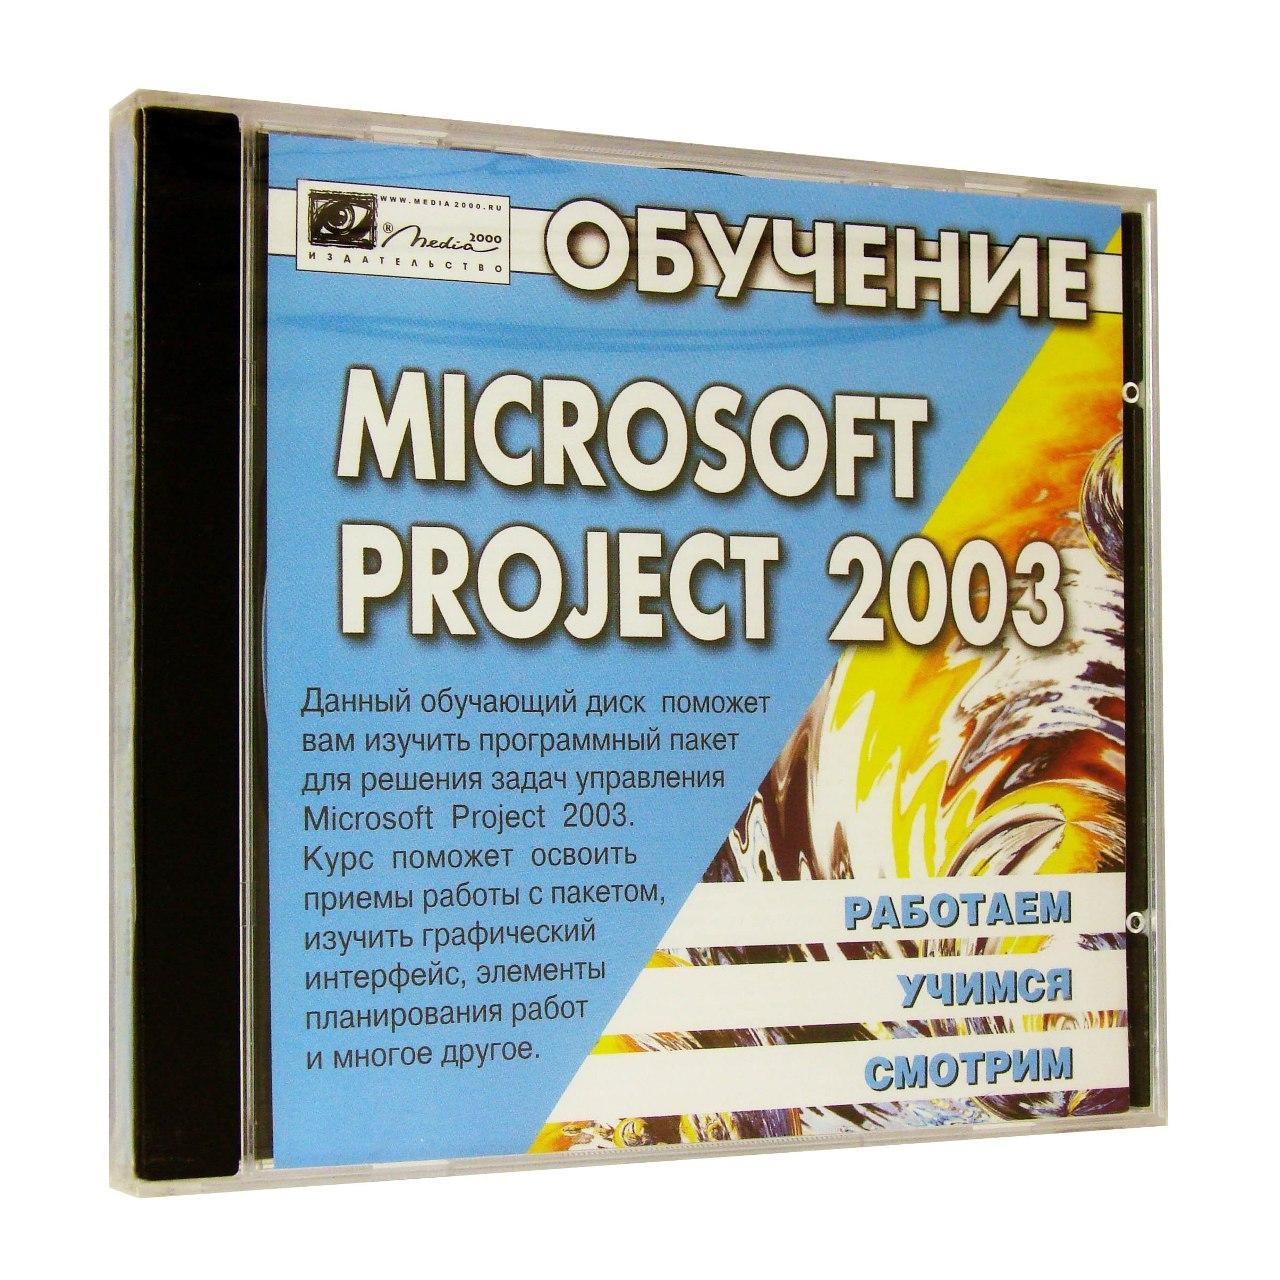 Компьютерный компакт-диск Обучение Microsoft Office Project 2003 (PC), фирма "Медиа 2000", 1CD